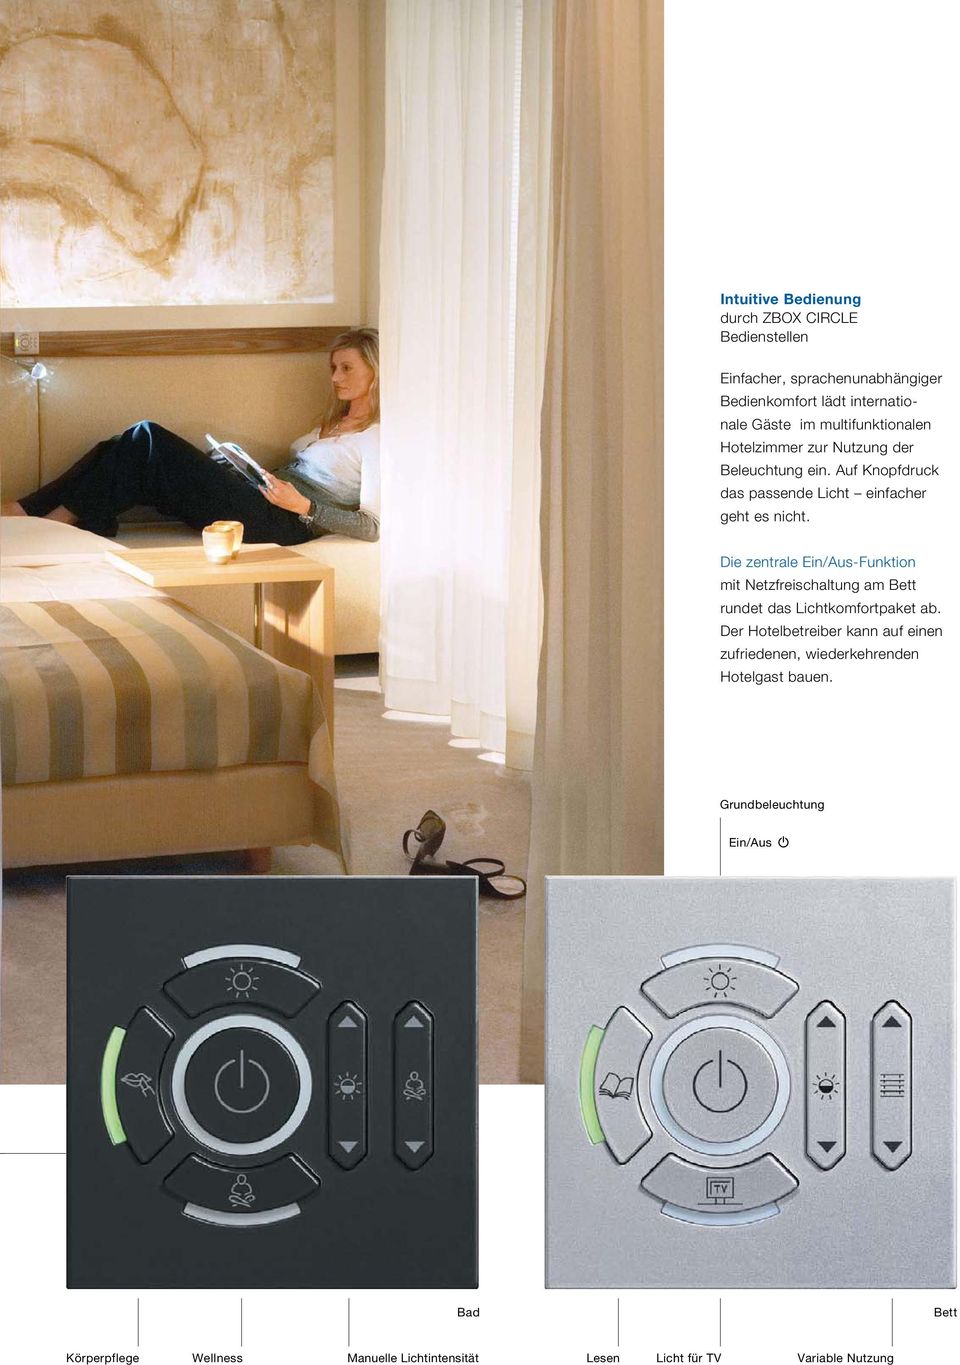 Die zentrale Ein/Aus-Funktion mit Netzfreischaltung am Bett rundet das Lichtkomfortpaket ab.